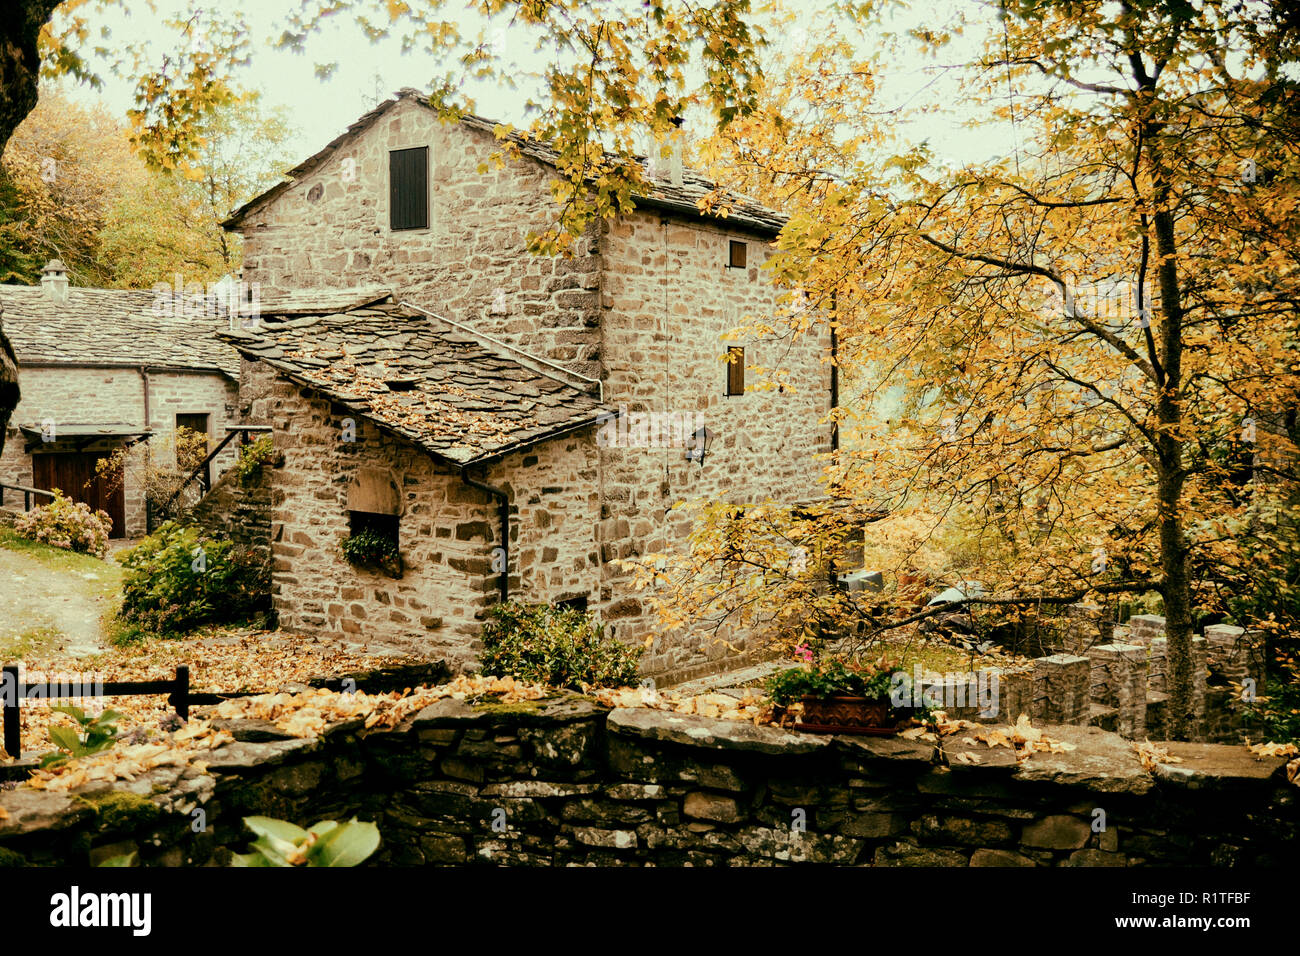 Une maison ancienne en pierre au cours de l'automne dans le centre de l'Italie Apennins Banque D'Images